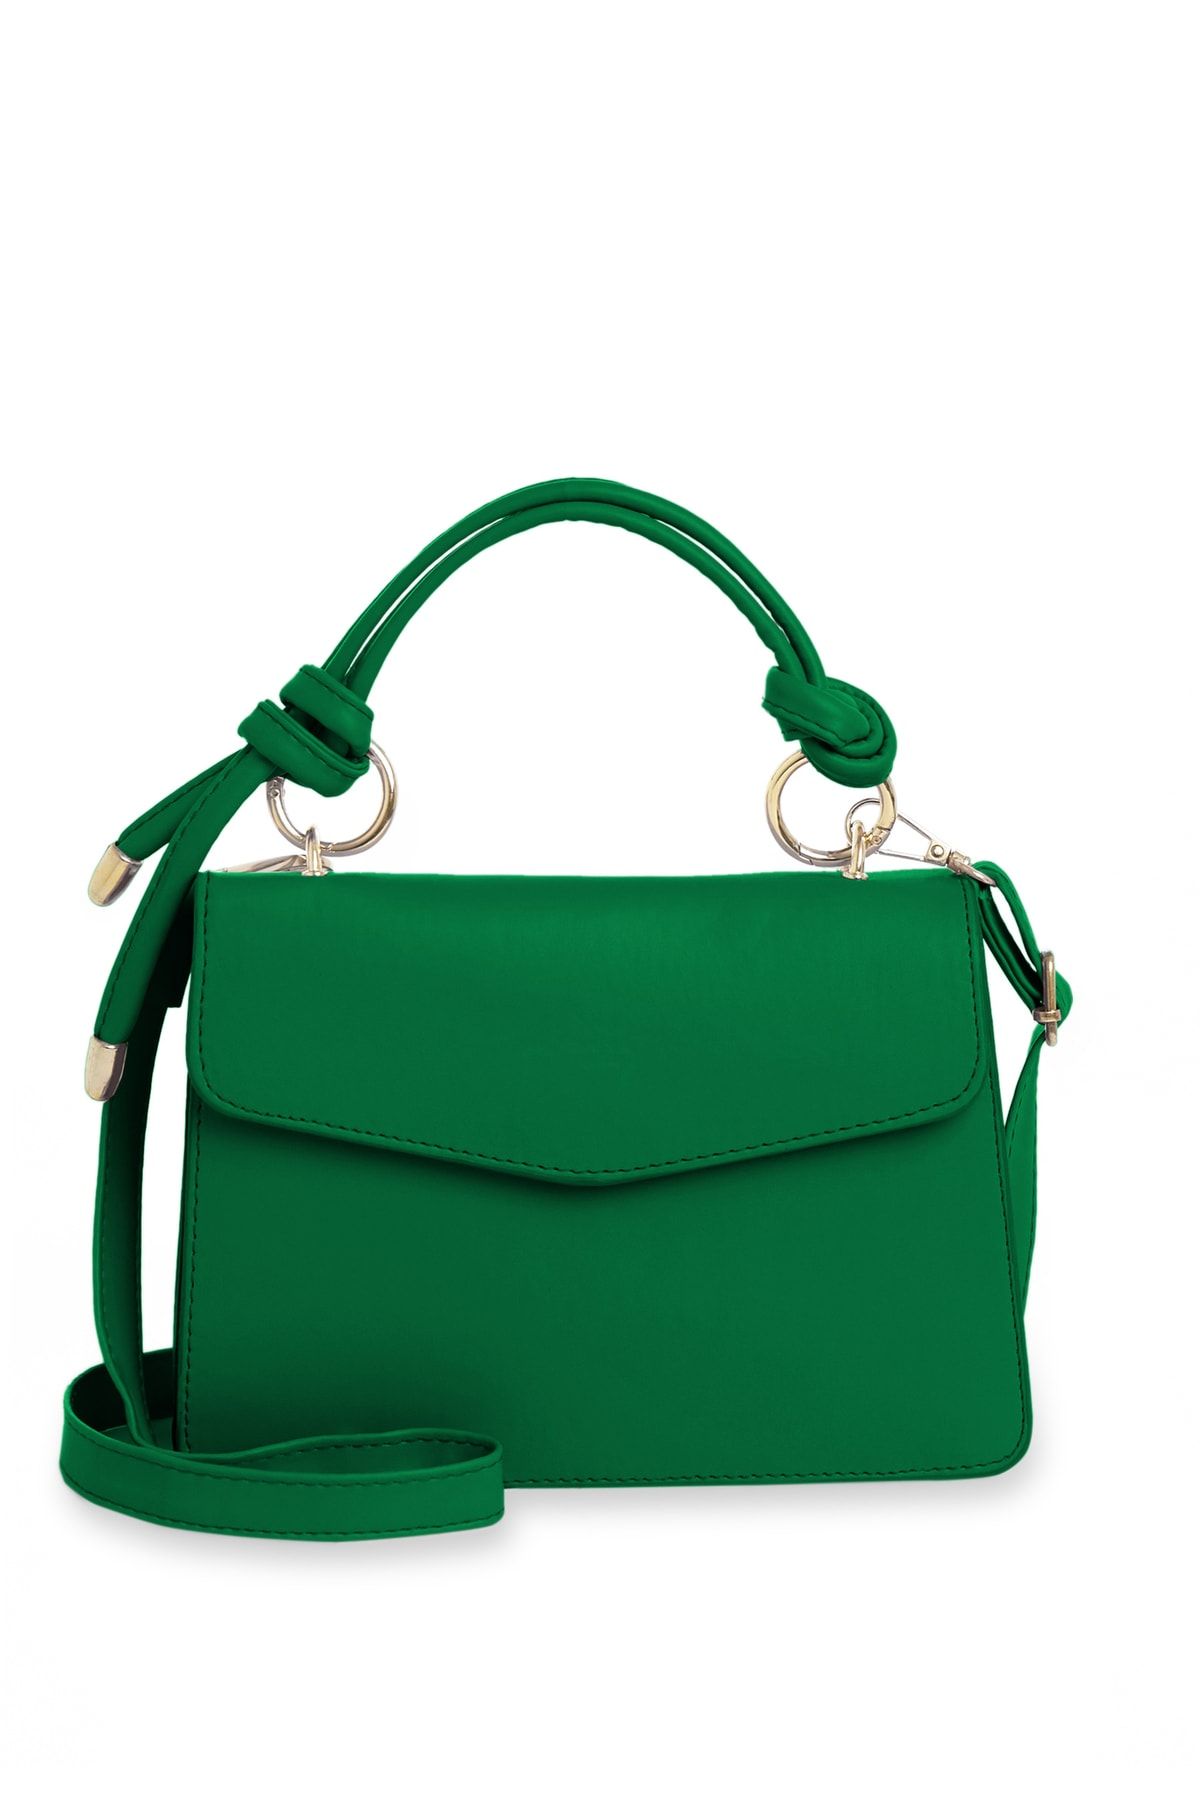 Green Black Shoulder Bag | Women Shoulder Bags Green | Green Black Fashion  Handbag - Shoulder Bags - Aliexpress